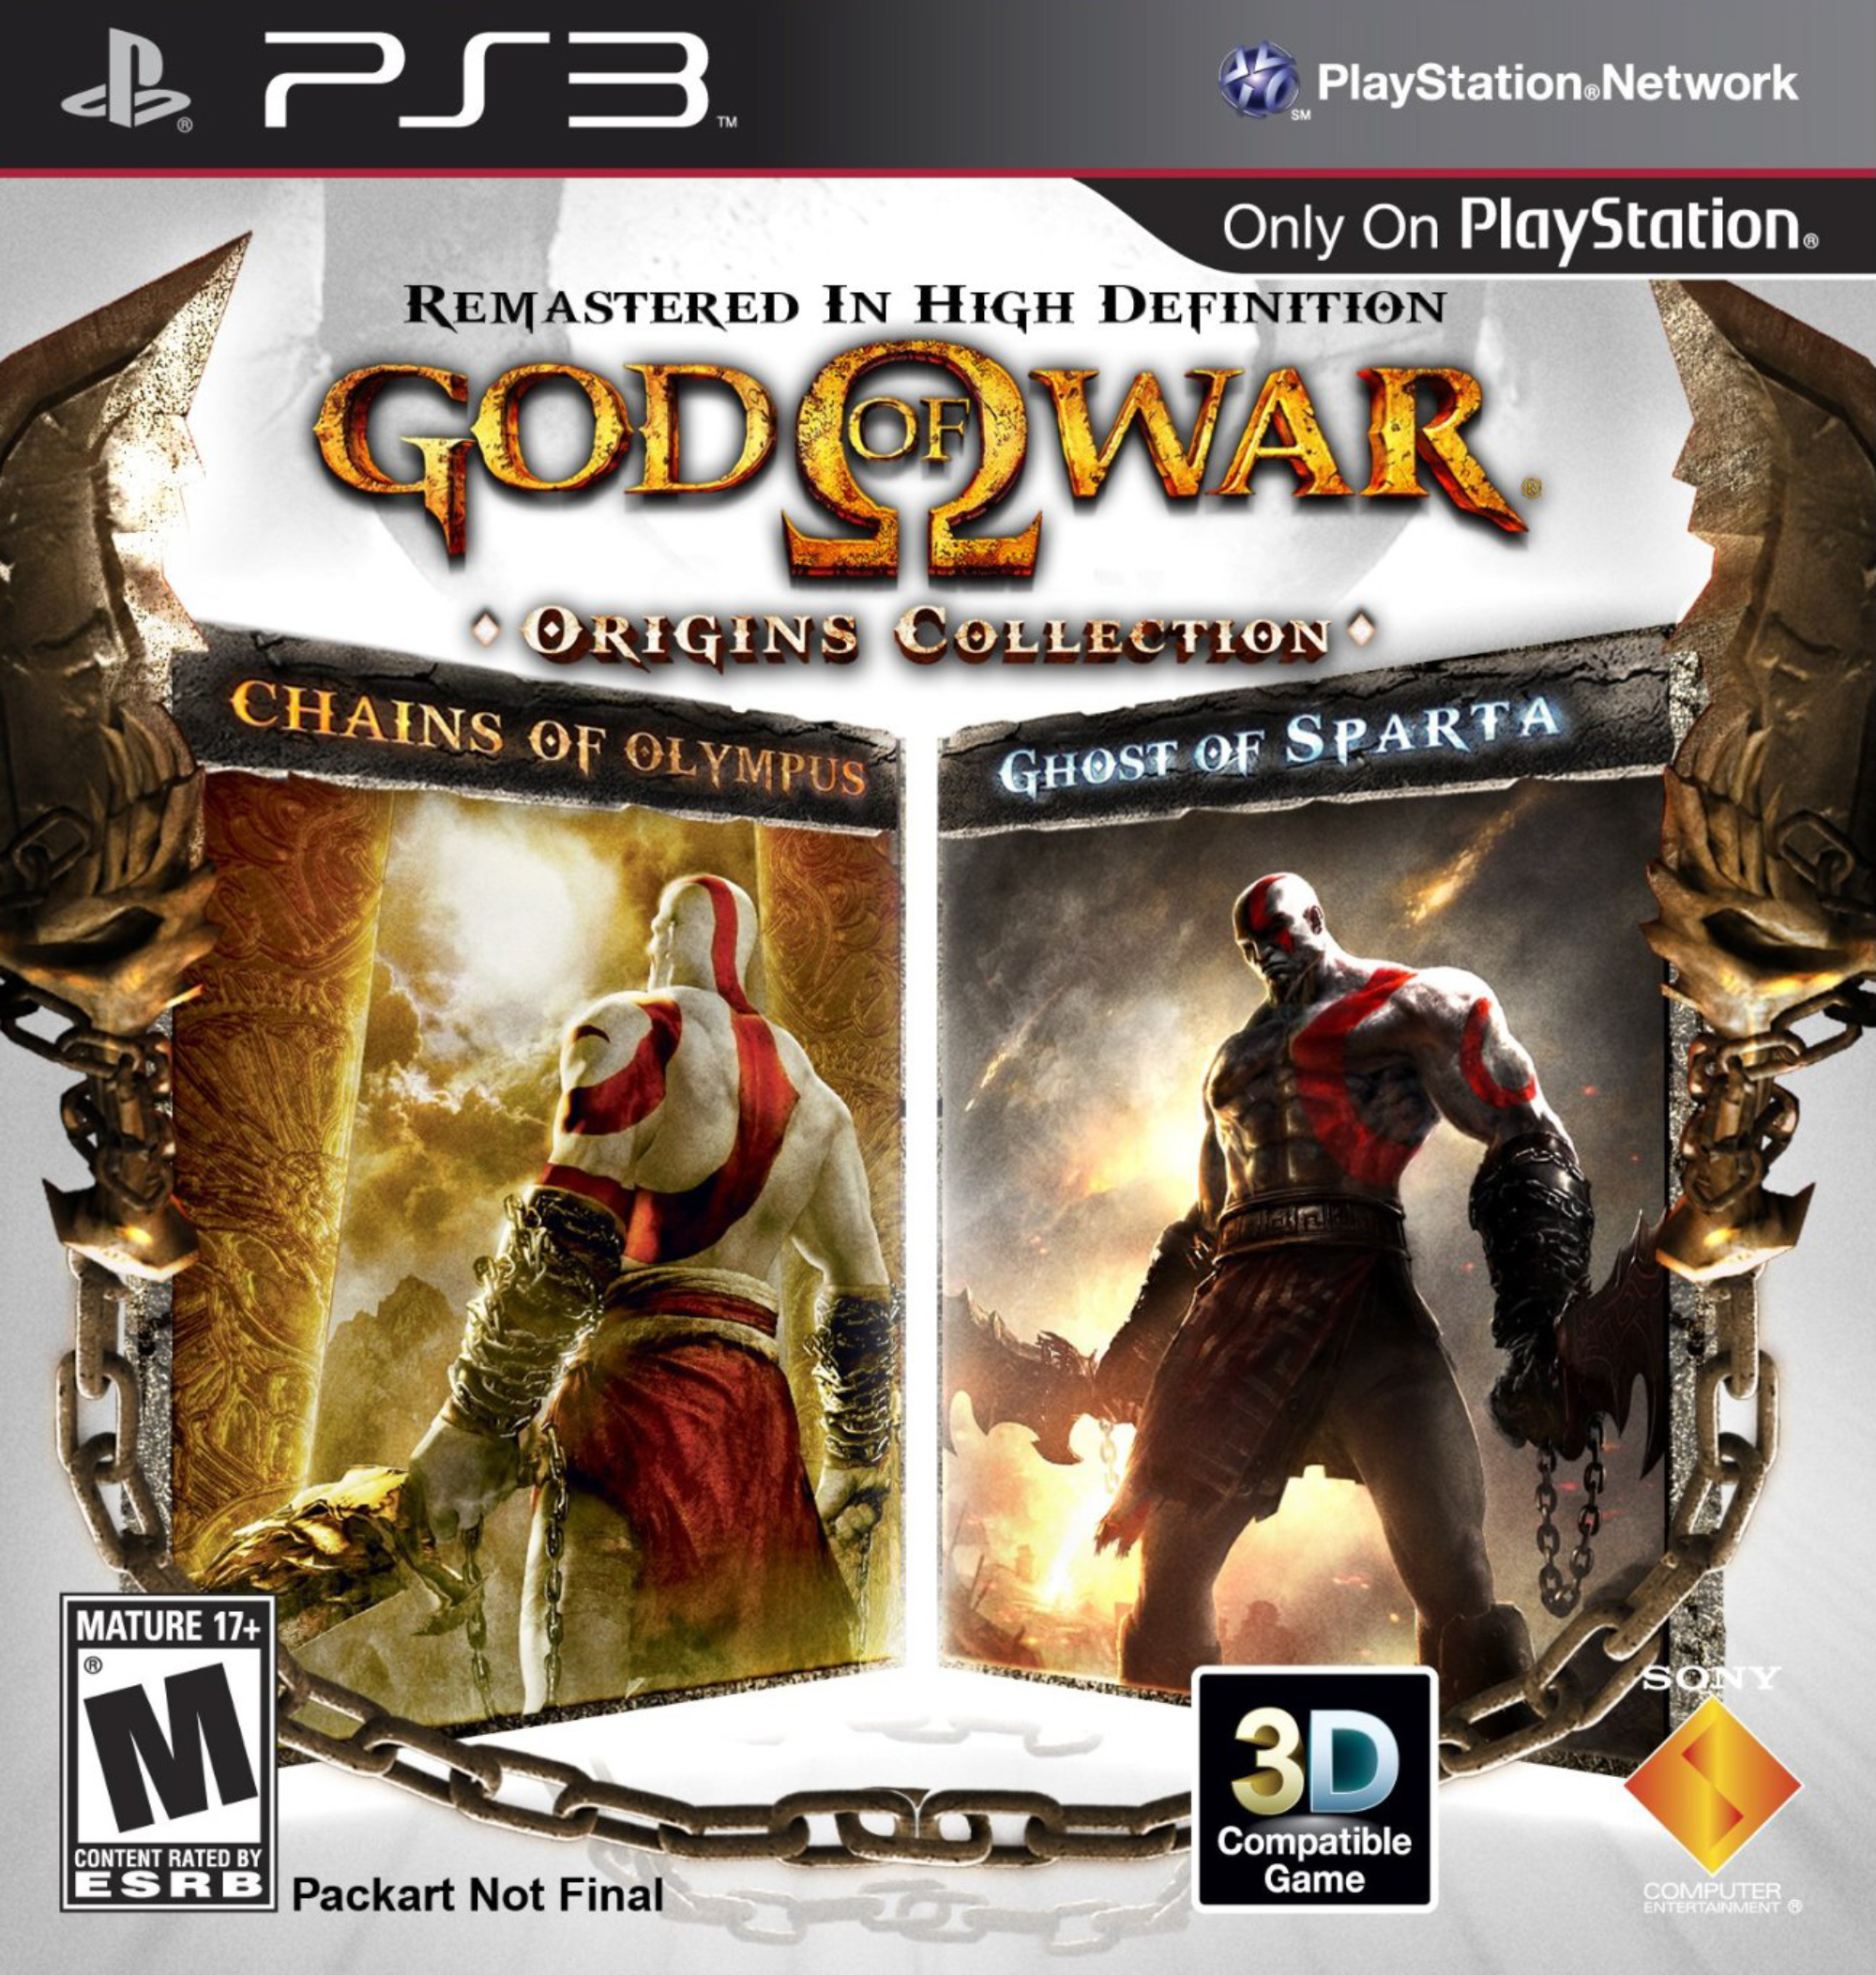 JOGO PS3 GOD OF WAR ASCENSION – Star Games Paraguay